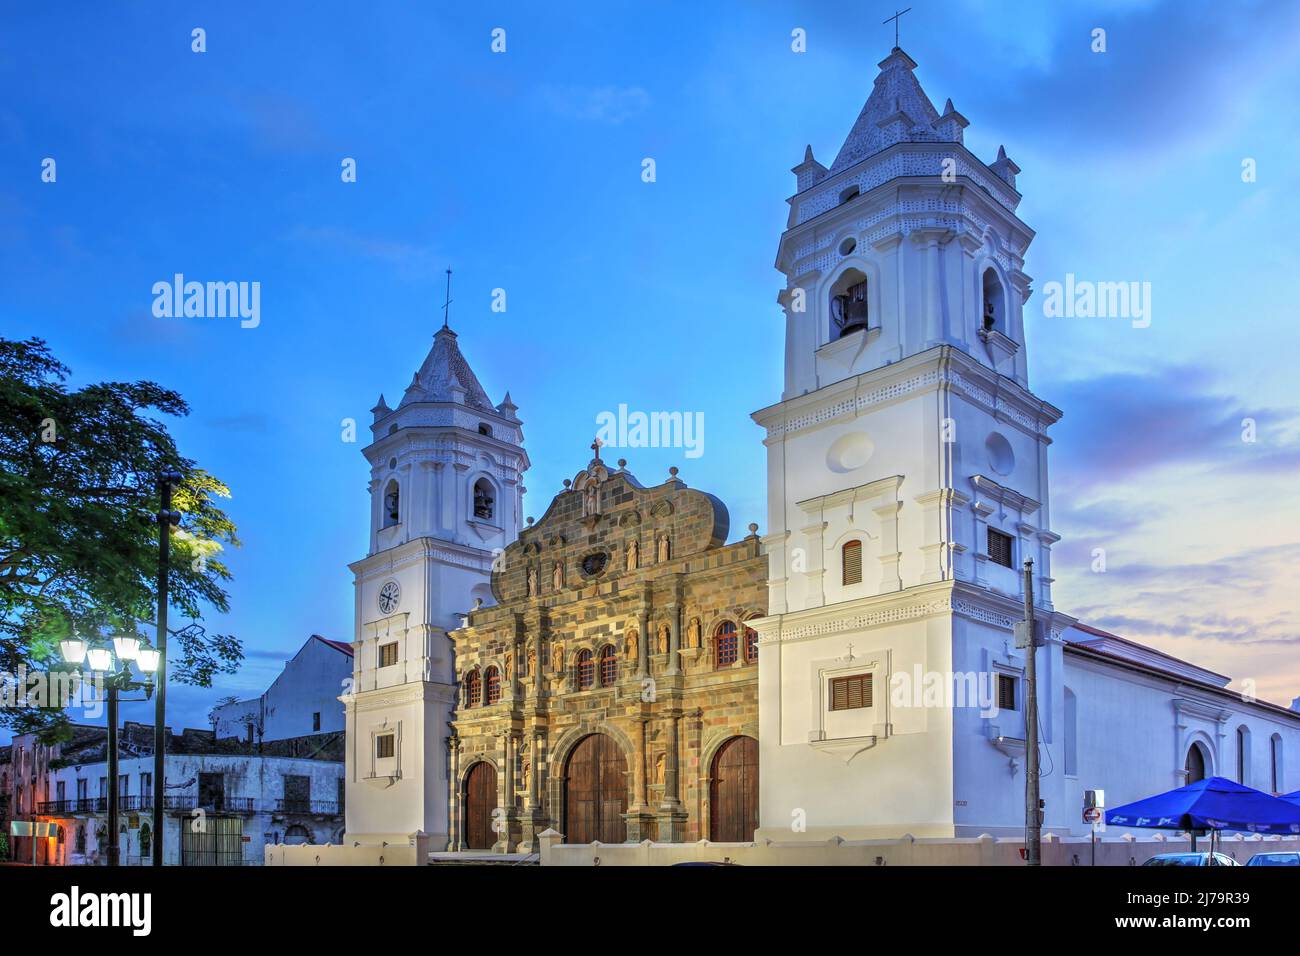 Magnifique coucher de soleil sur la place Casco Antiguo avec la cathédrale métropolitaine de Panama, Santa Maria la Antigua. Banque D'Images